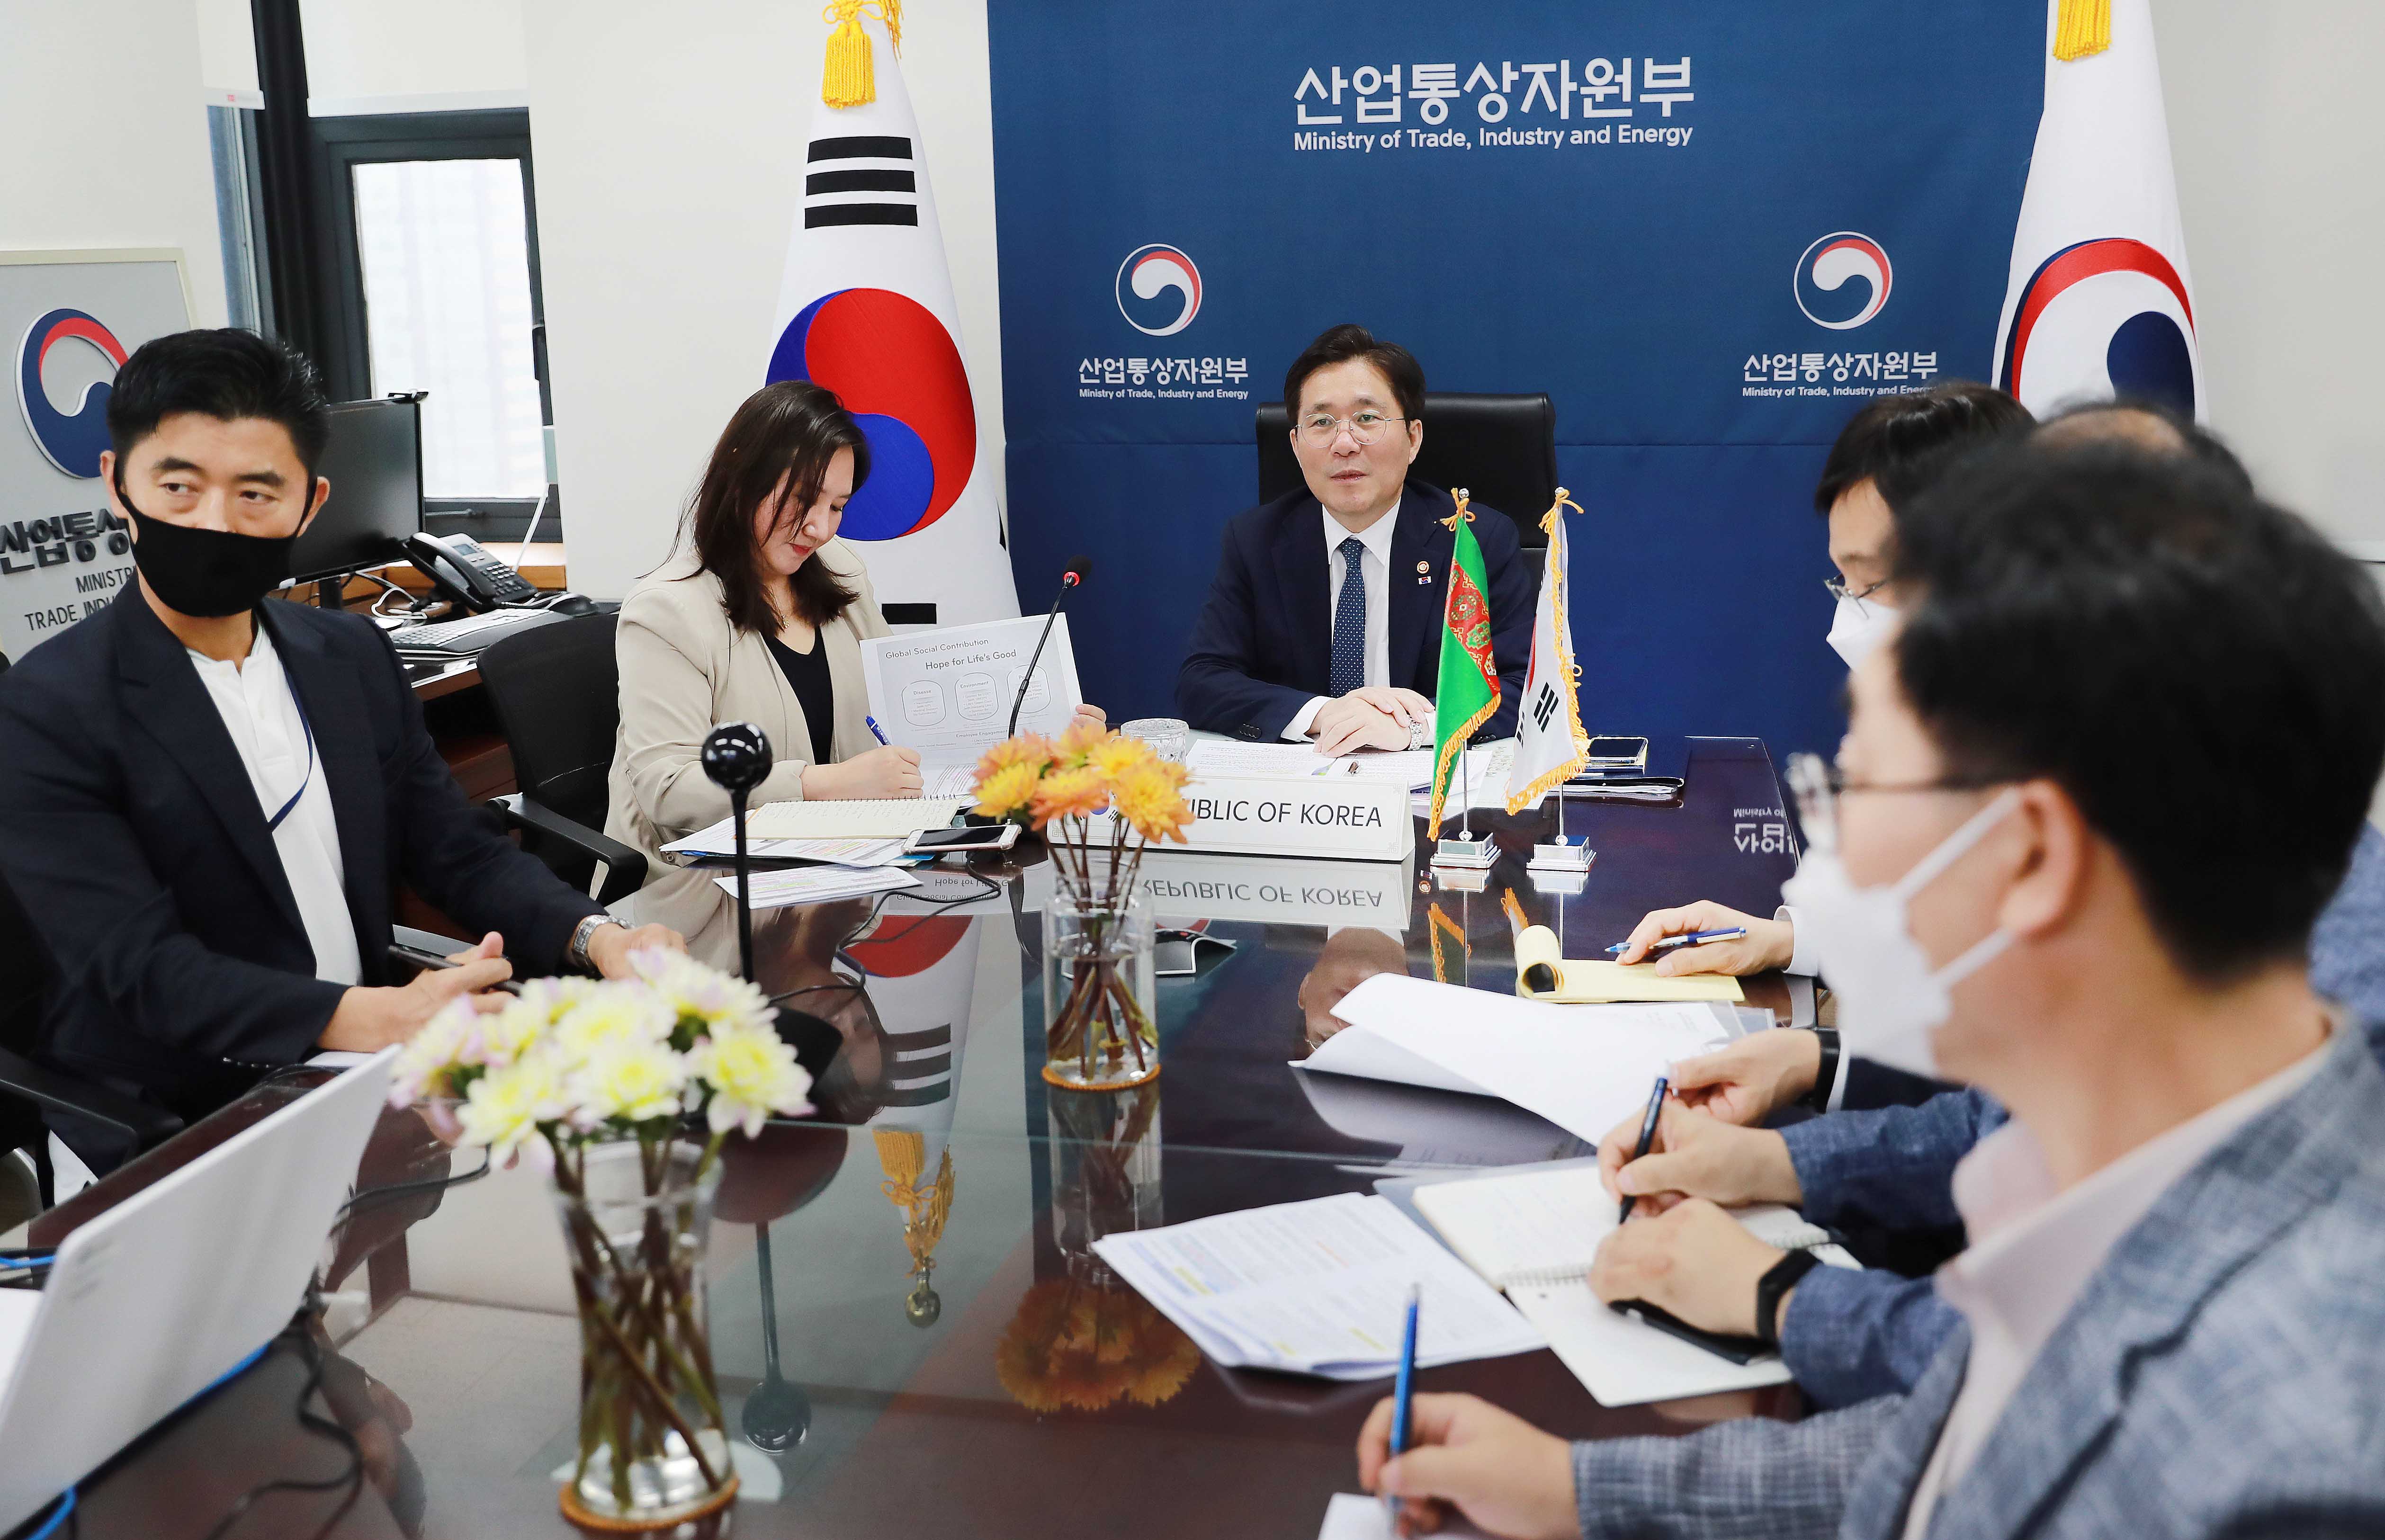 성윤모 산업통상자원부장관 등 한국측이 화상화면을 바라보고 있는 모습